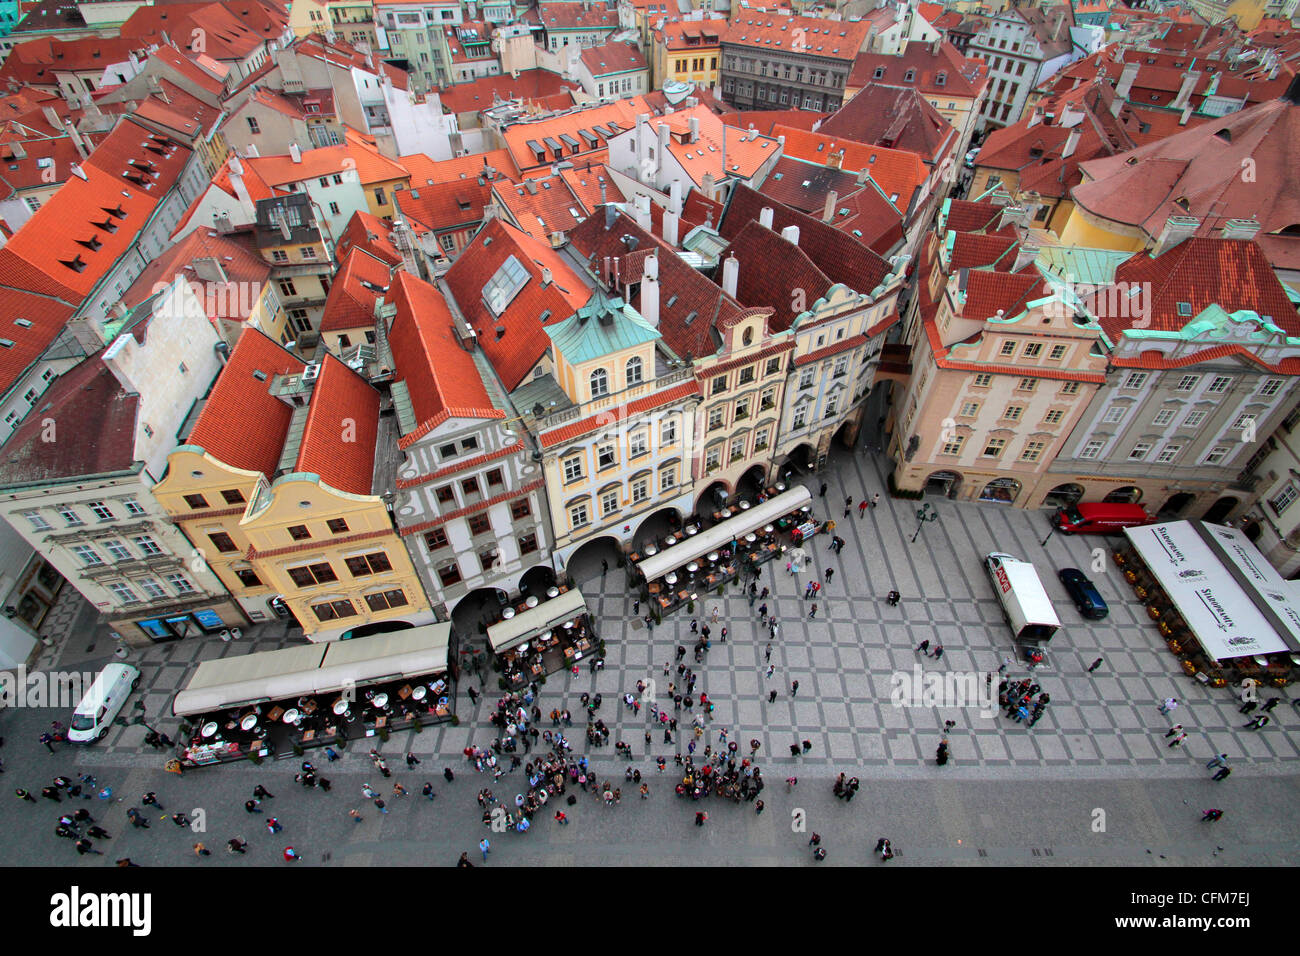 UNESCO-Weltkulturerbe, Altstädter Ring, Prag, Tschechische Republik, Europa Stockfoto